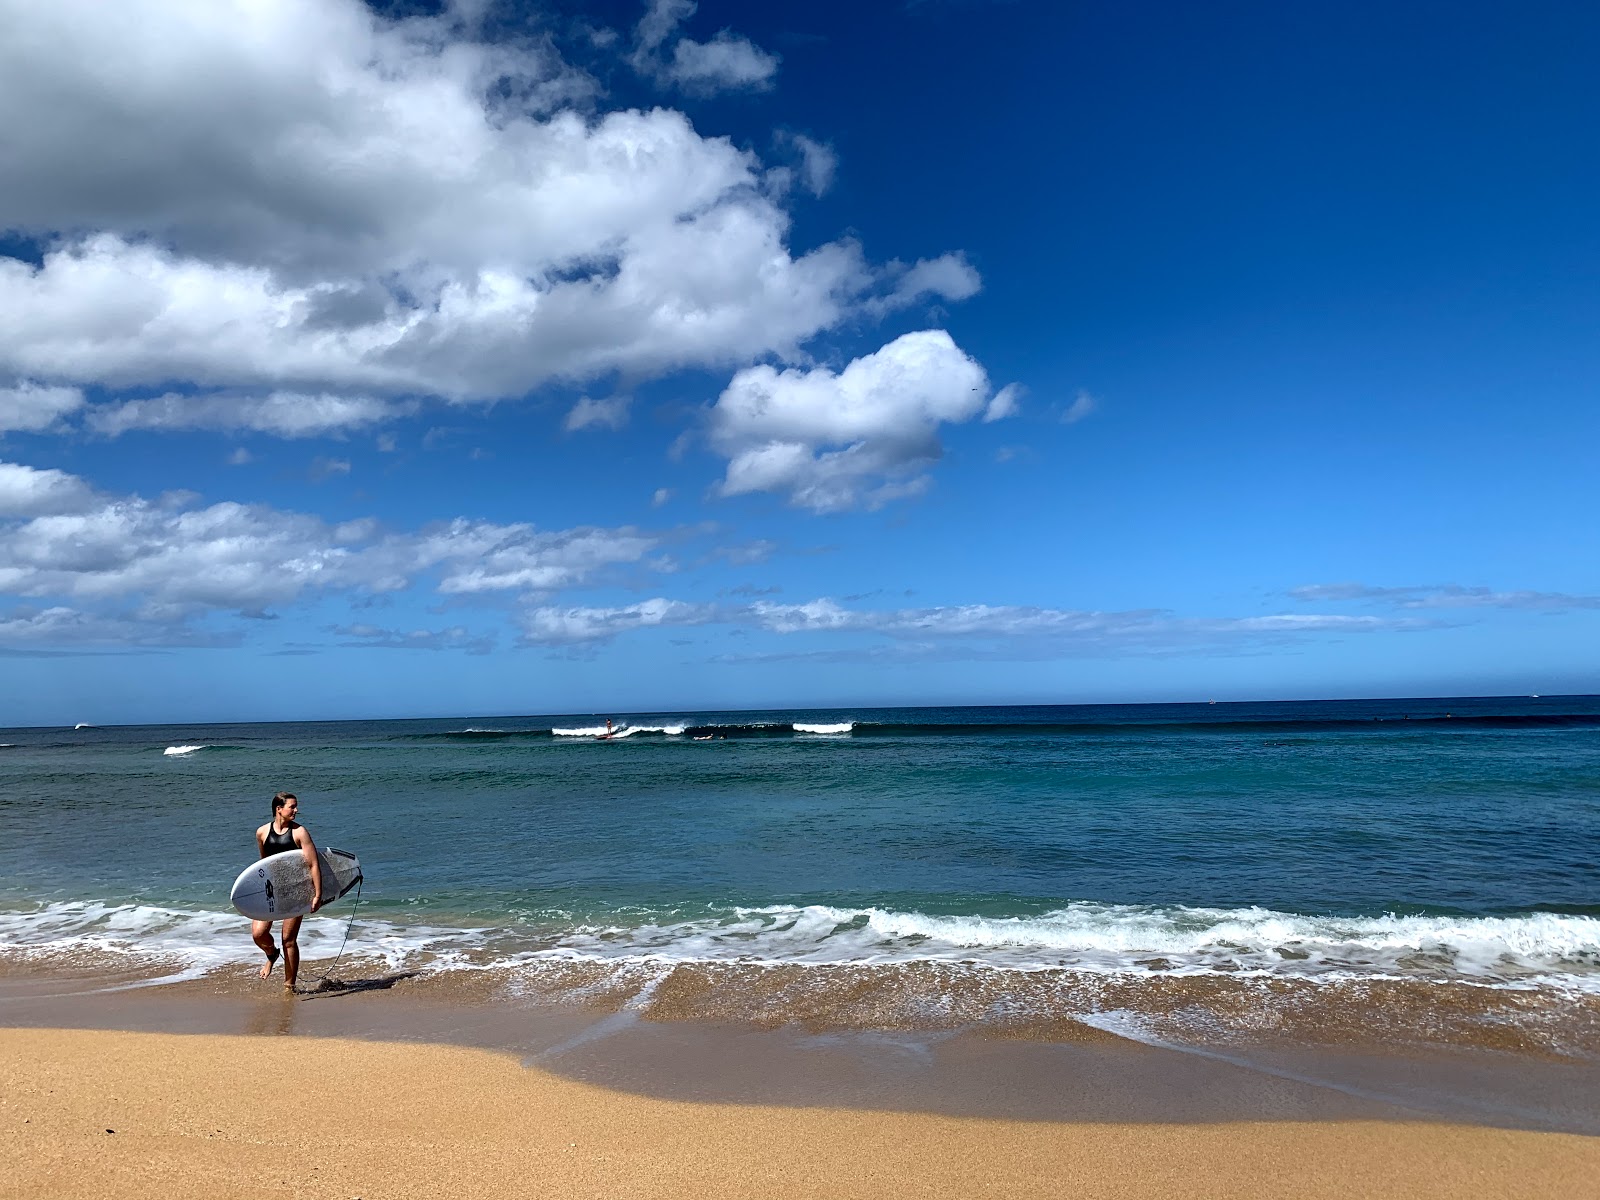 Haleiwa Alii Beach'in fotoğrafı geniş plaj ile birlikte